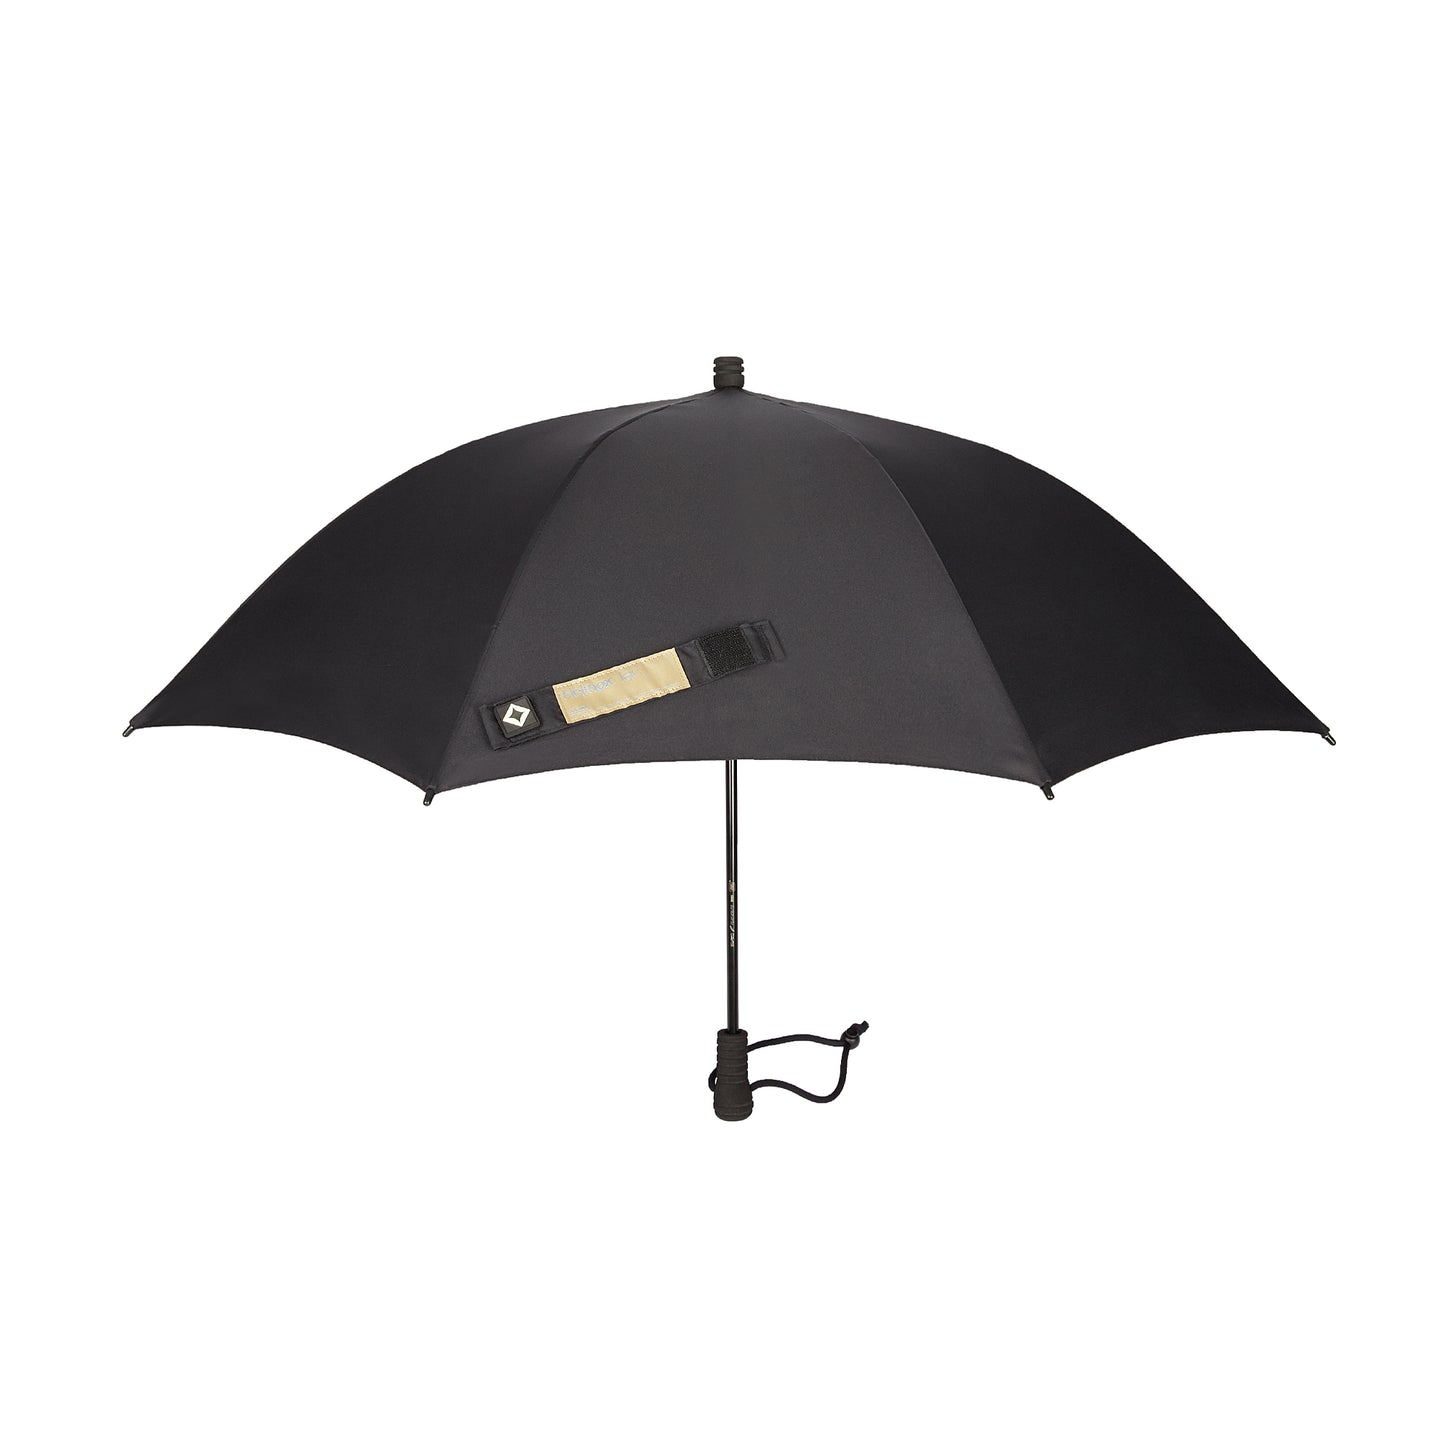 Tac. Umbrella - Black